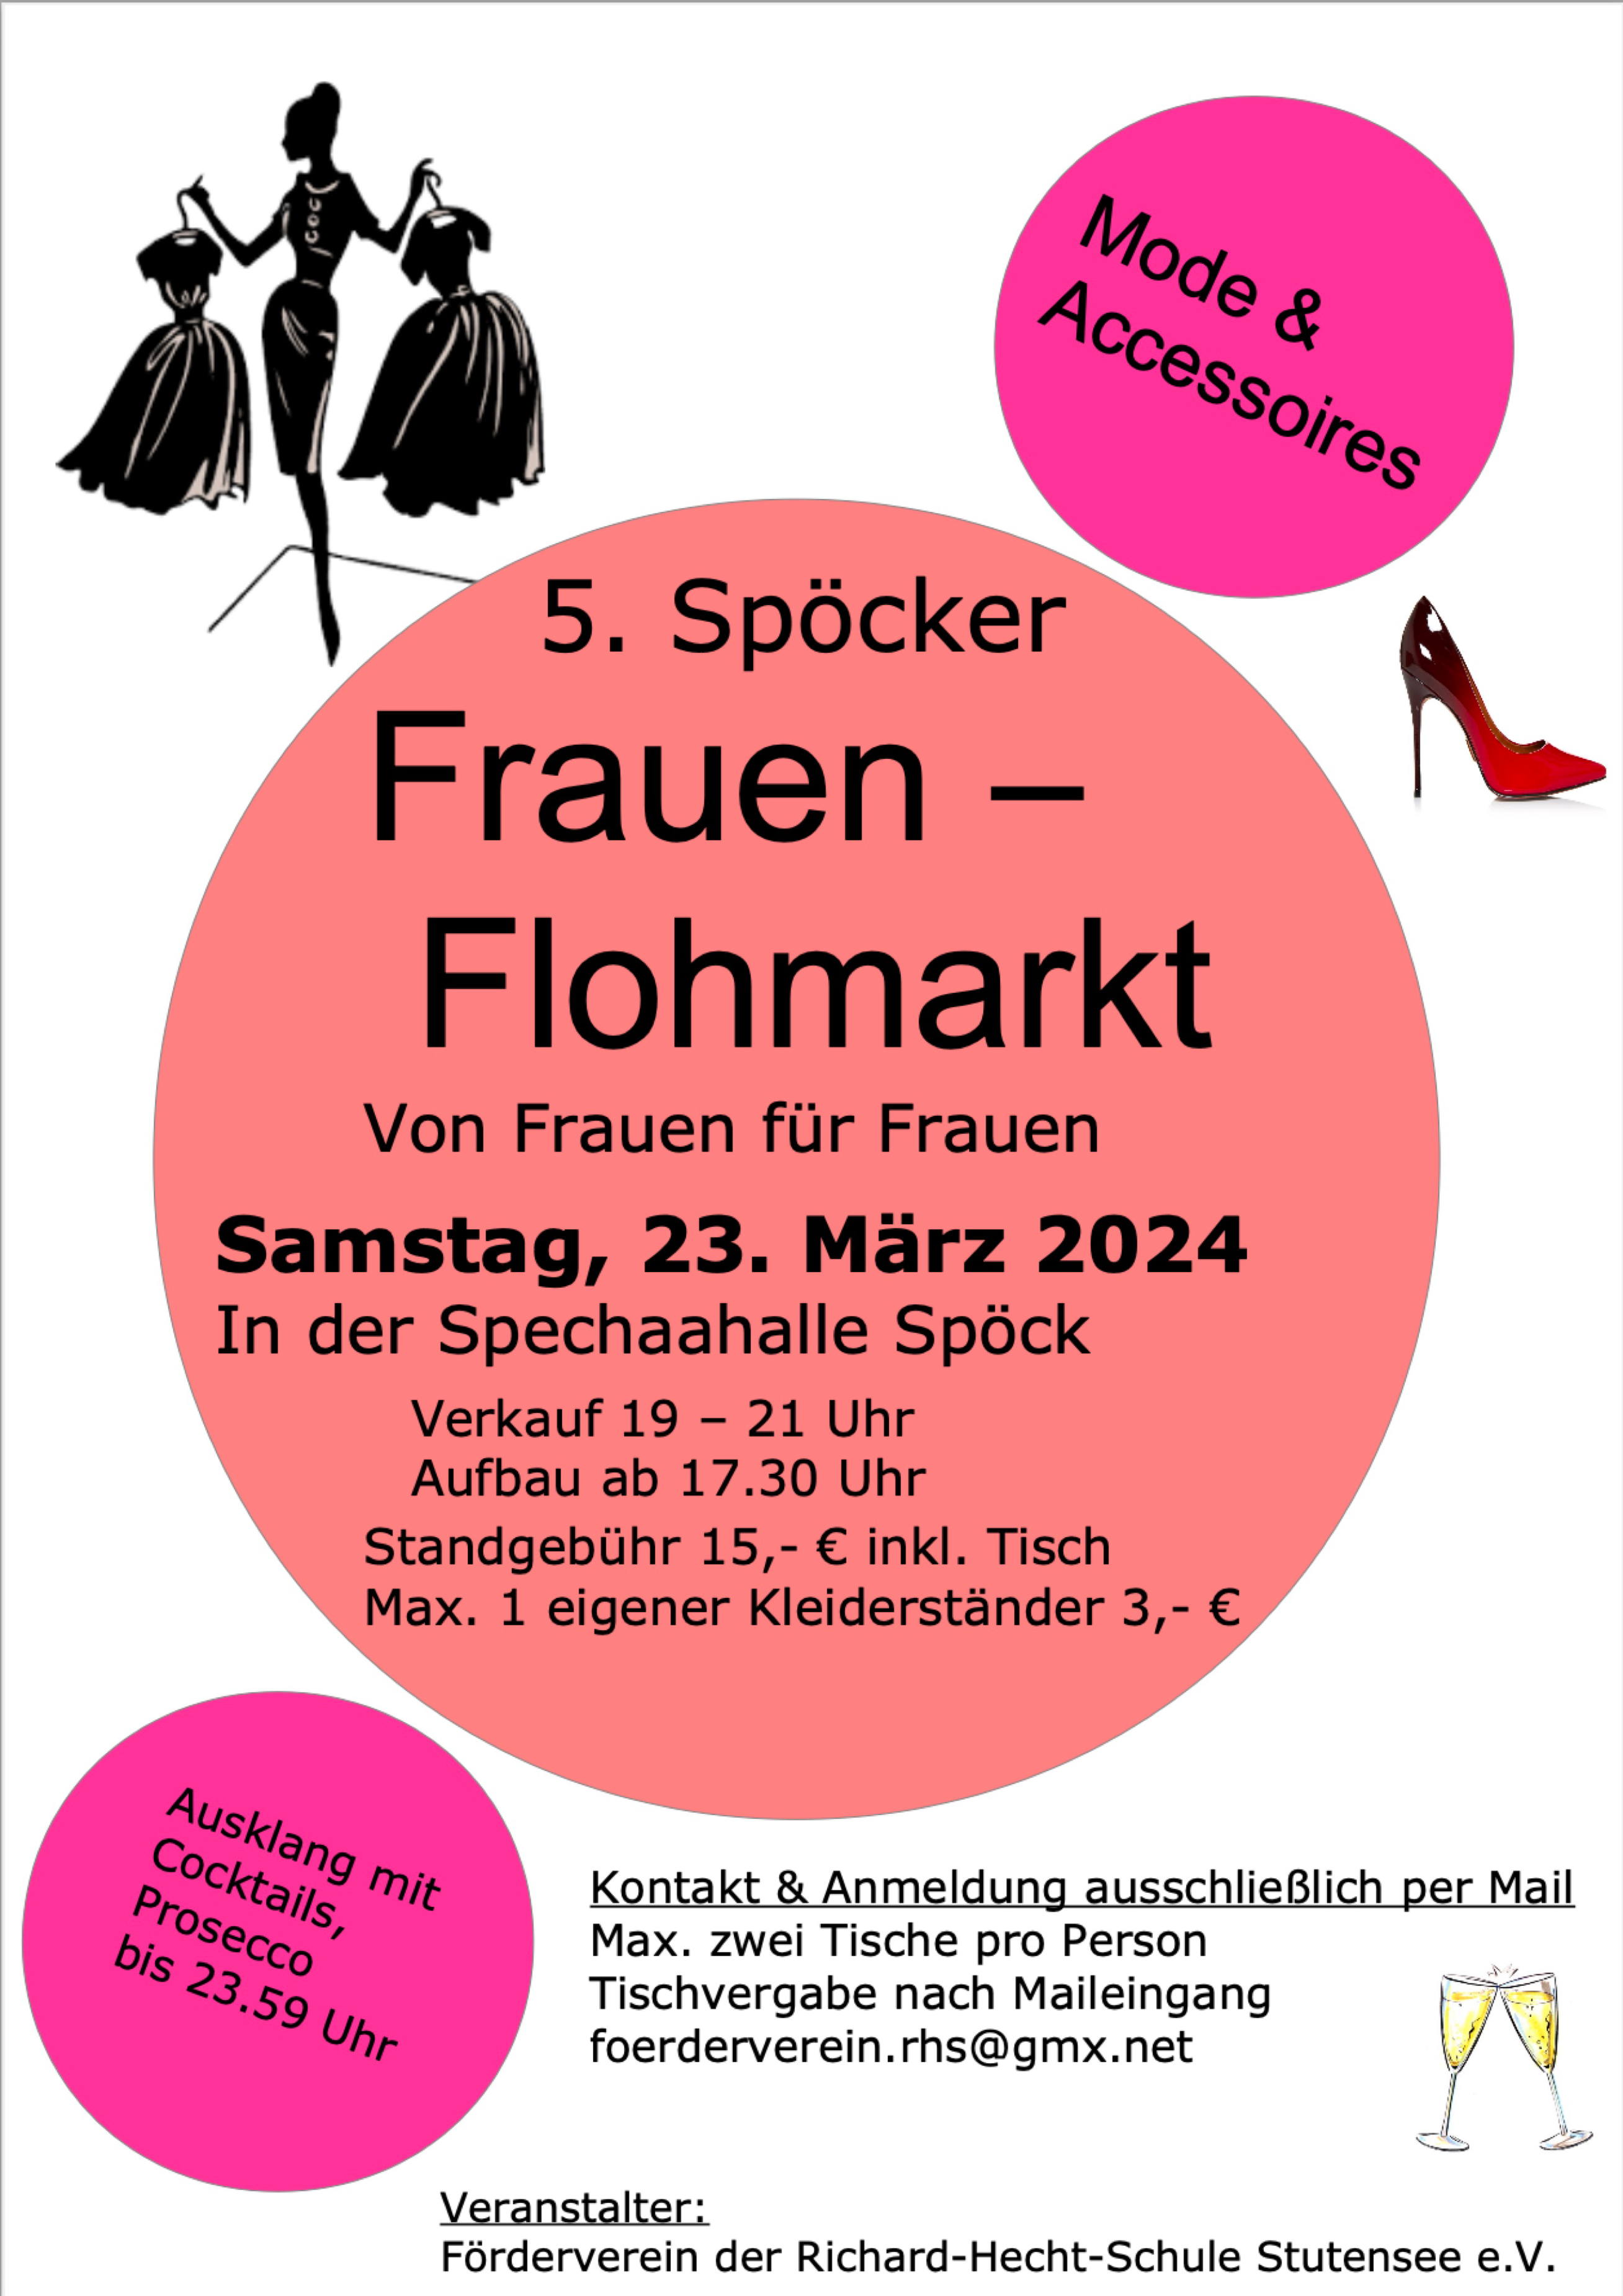 Frauenflohmarkt | Spechaahalle Spöck